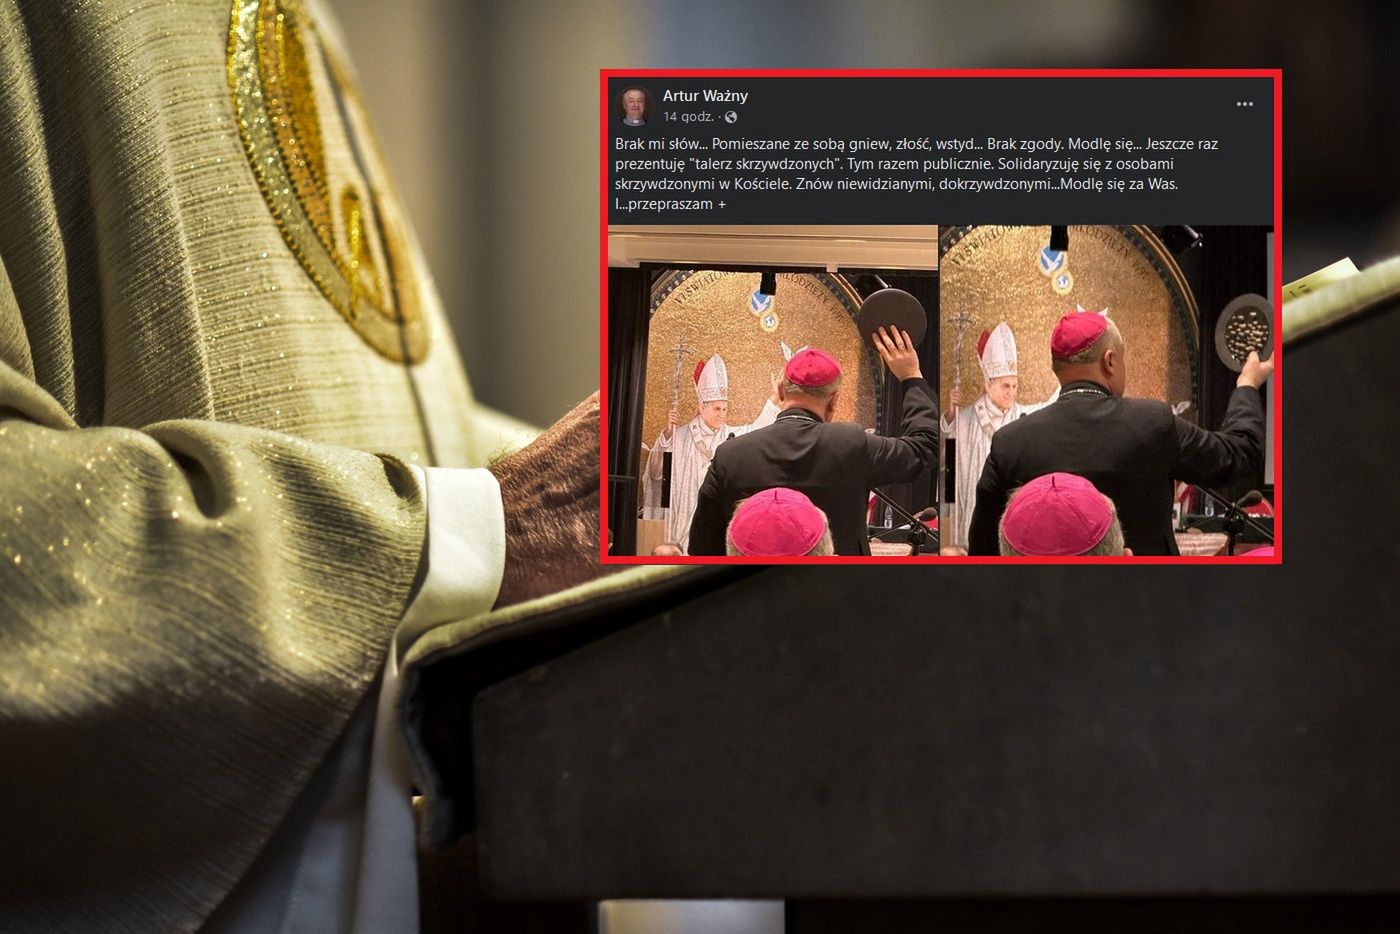 Biskup komentuje rezygnację abp Dzięgi. "Gniew, złość, wstyd... Brak zgody"